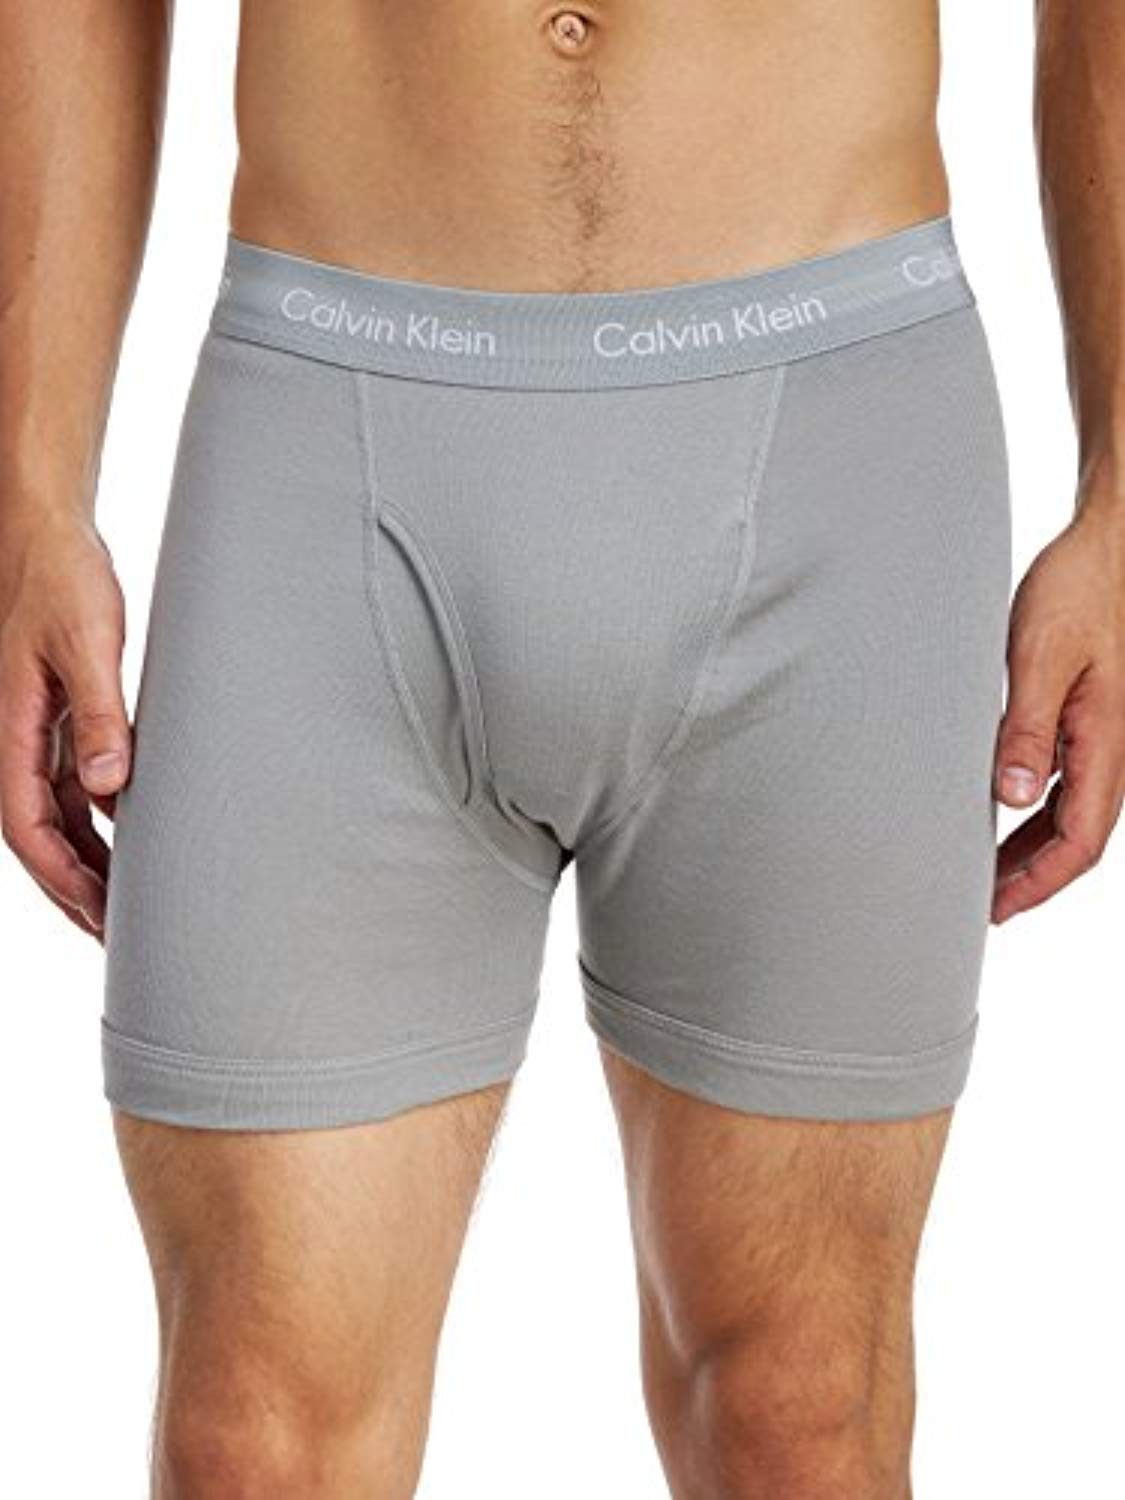 Calvin Klein Men's Underwear Cotton Stretch 3- Pack Boxer